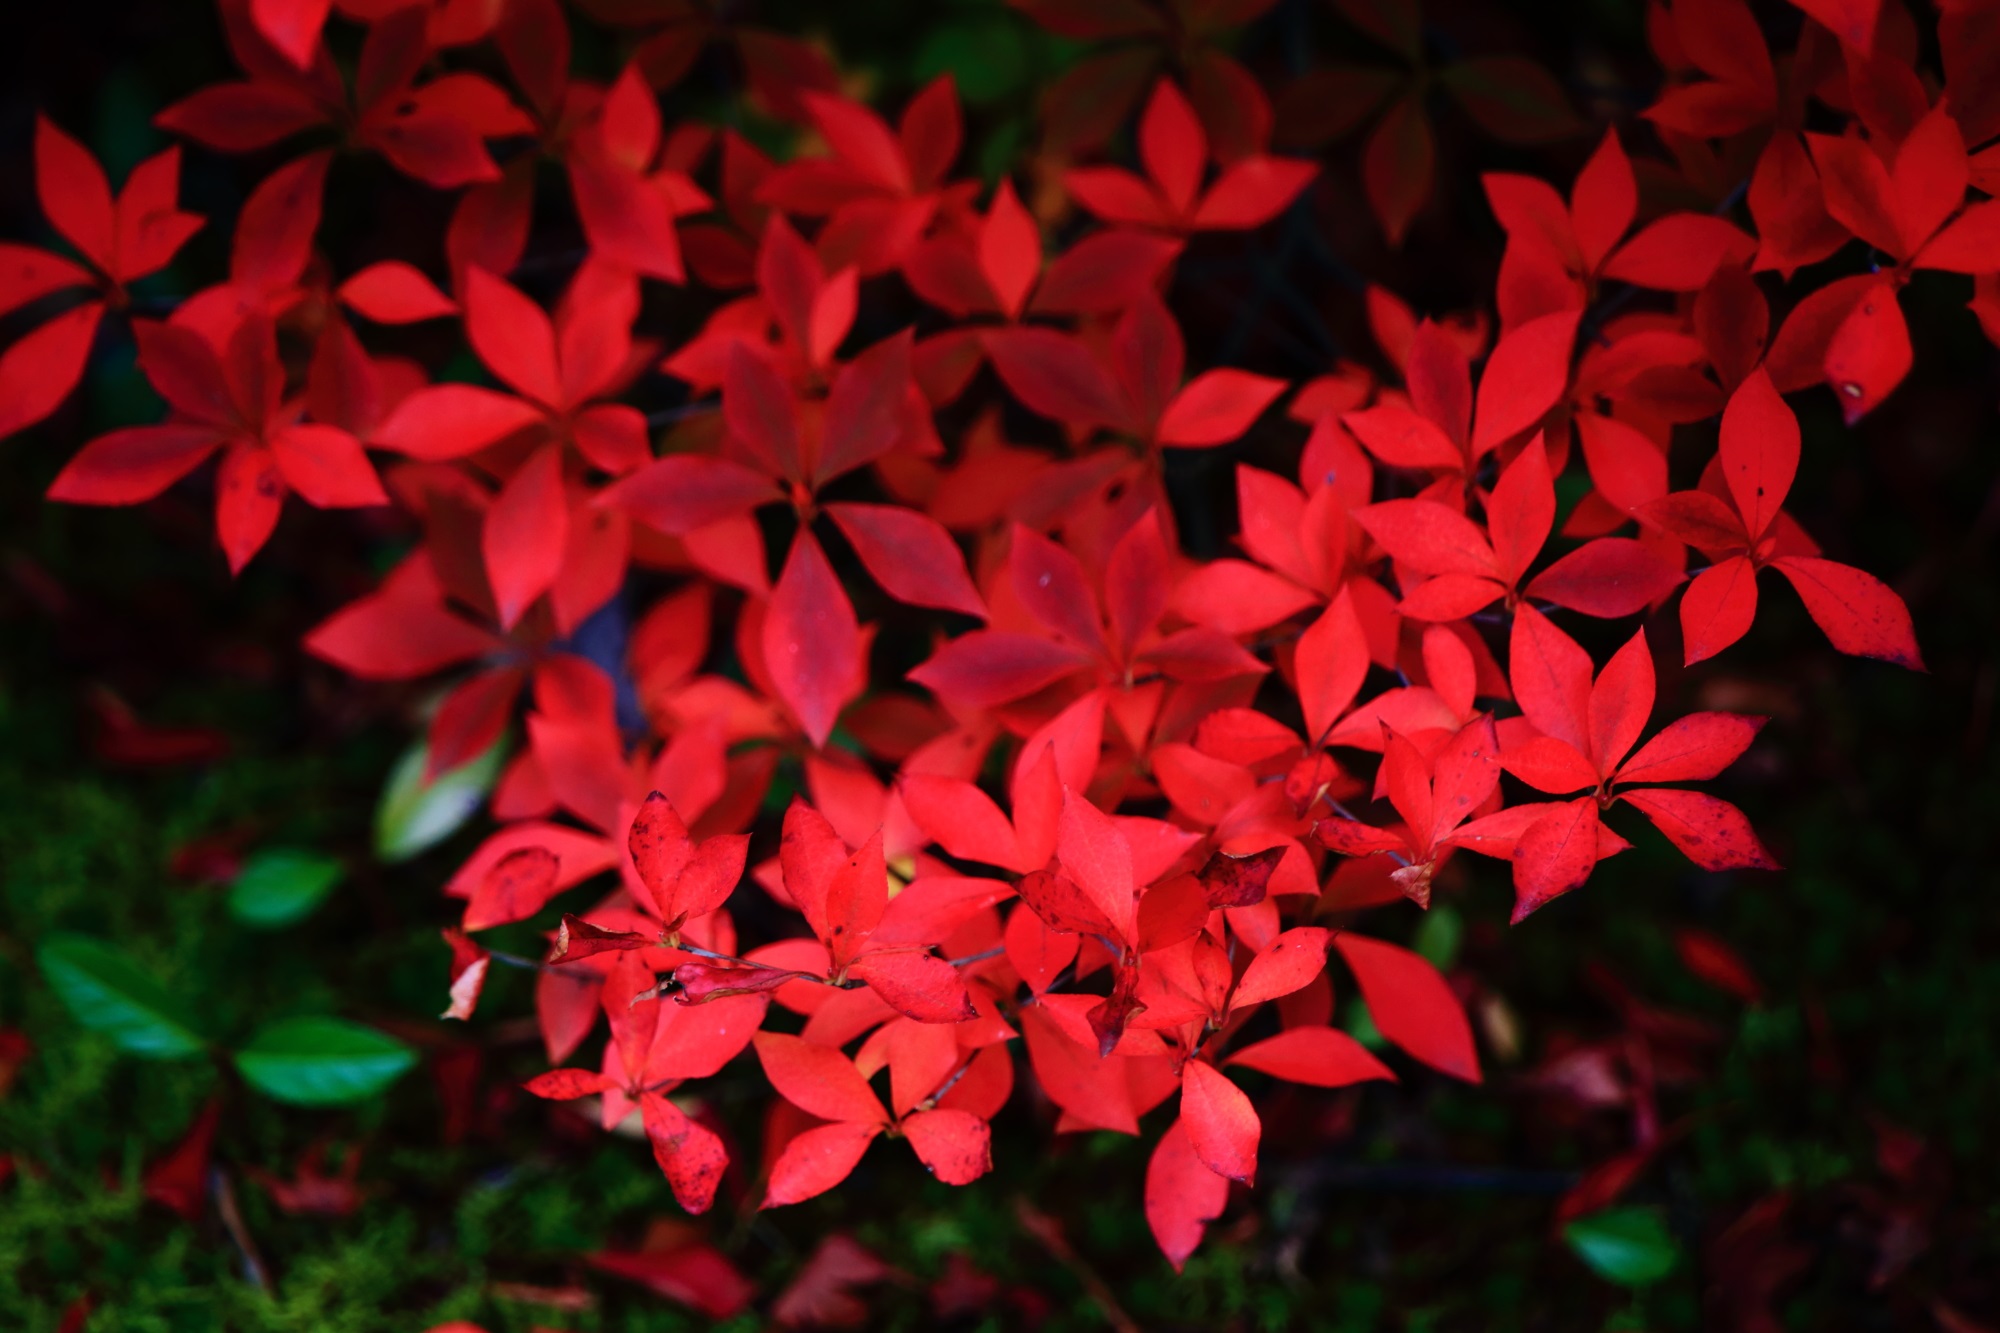 ほのかに光るような妖艶な深い赤色のドウダンツツジの紅葉